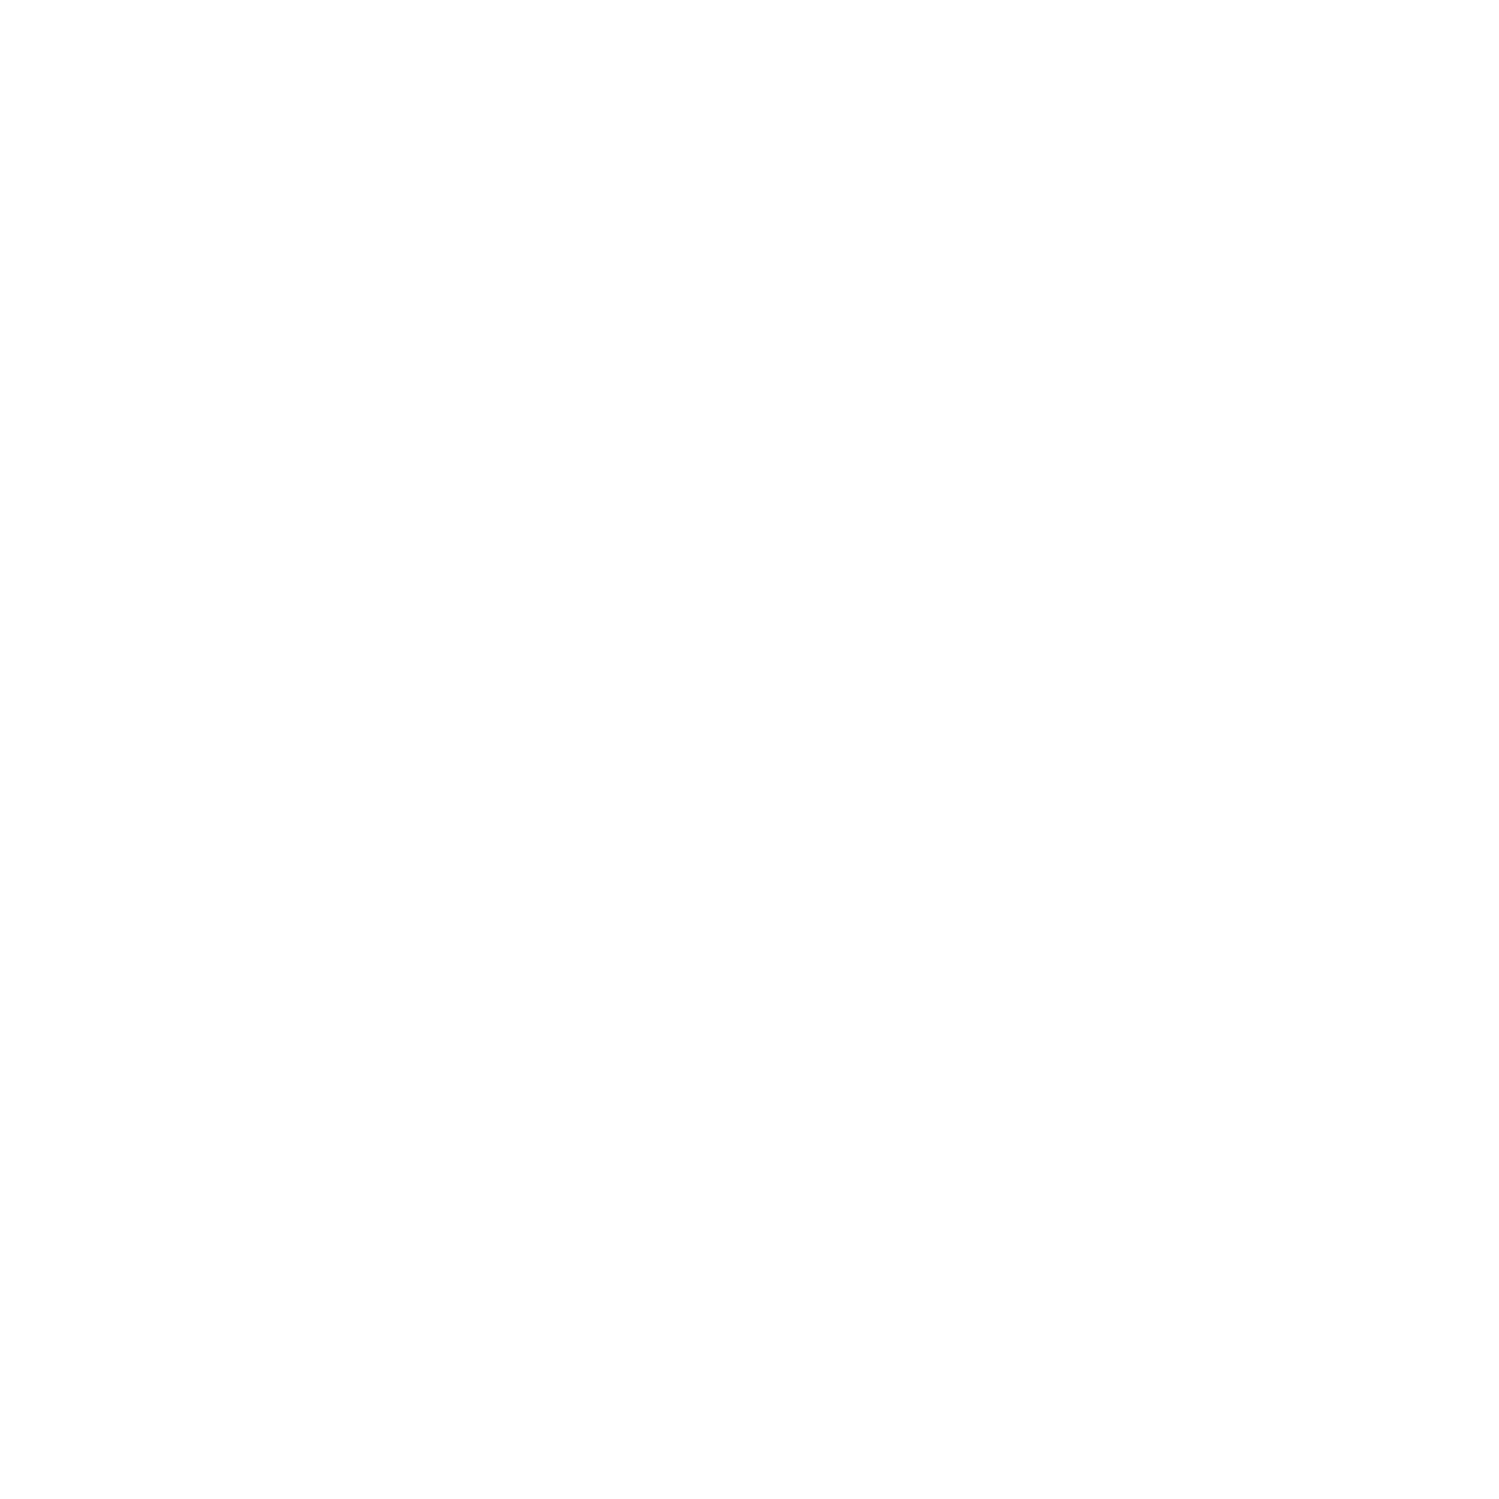 Al Dar Properties logo large for dark backgrounds (transparent PNG)